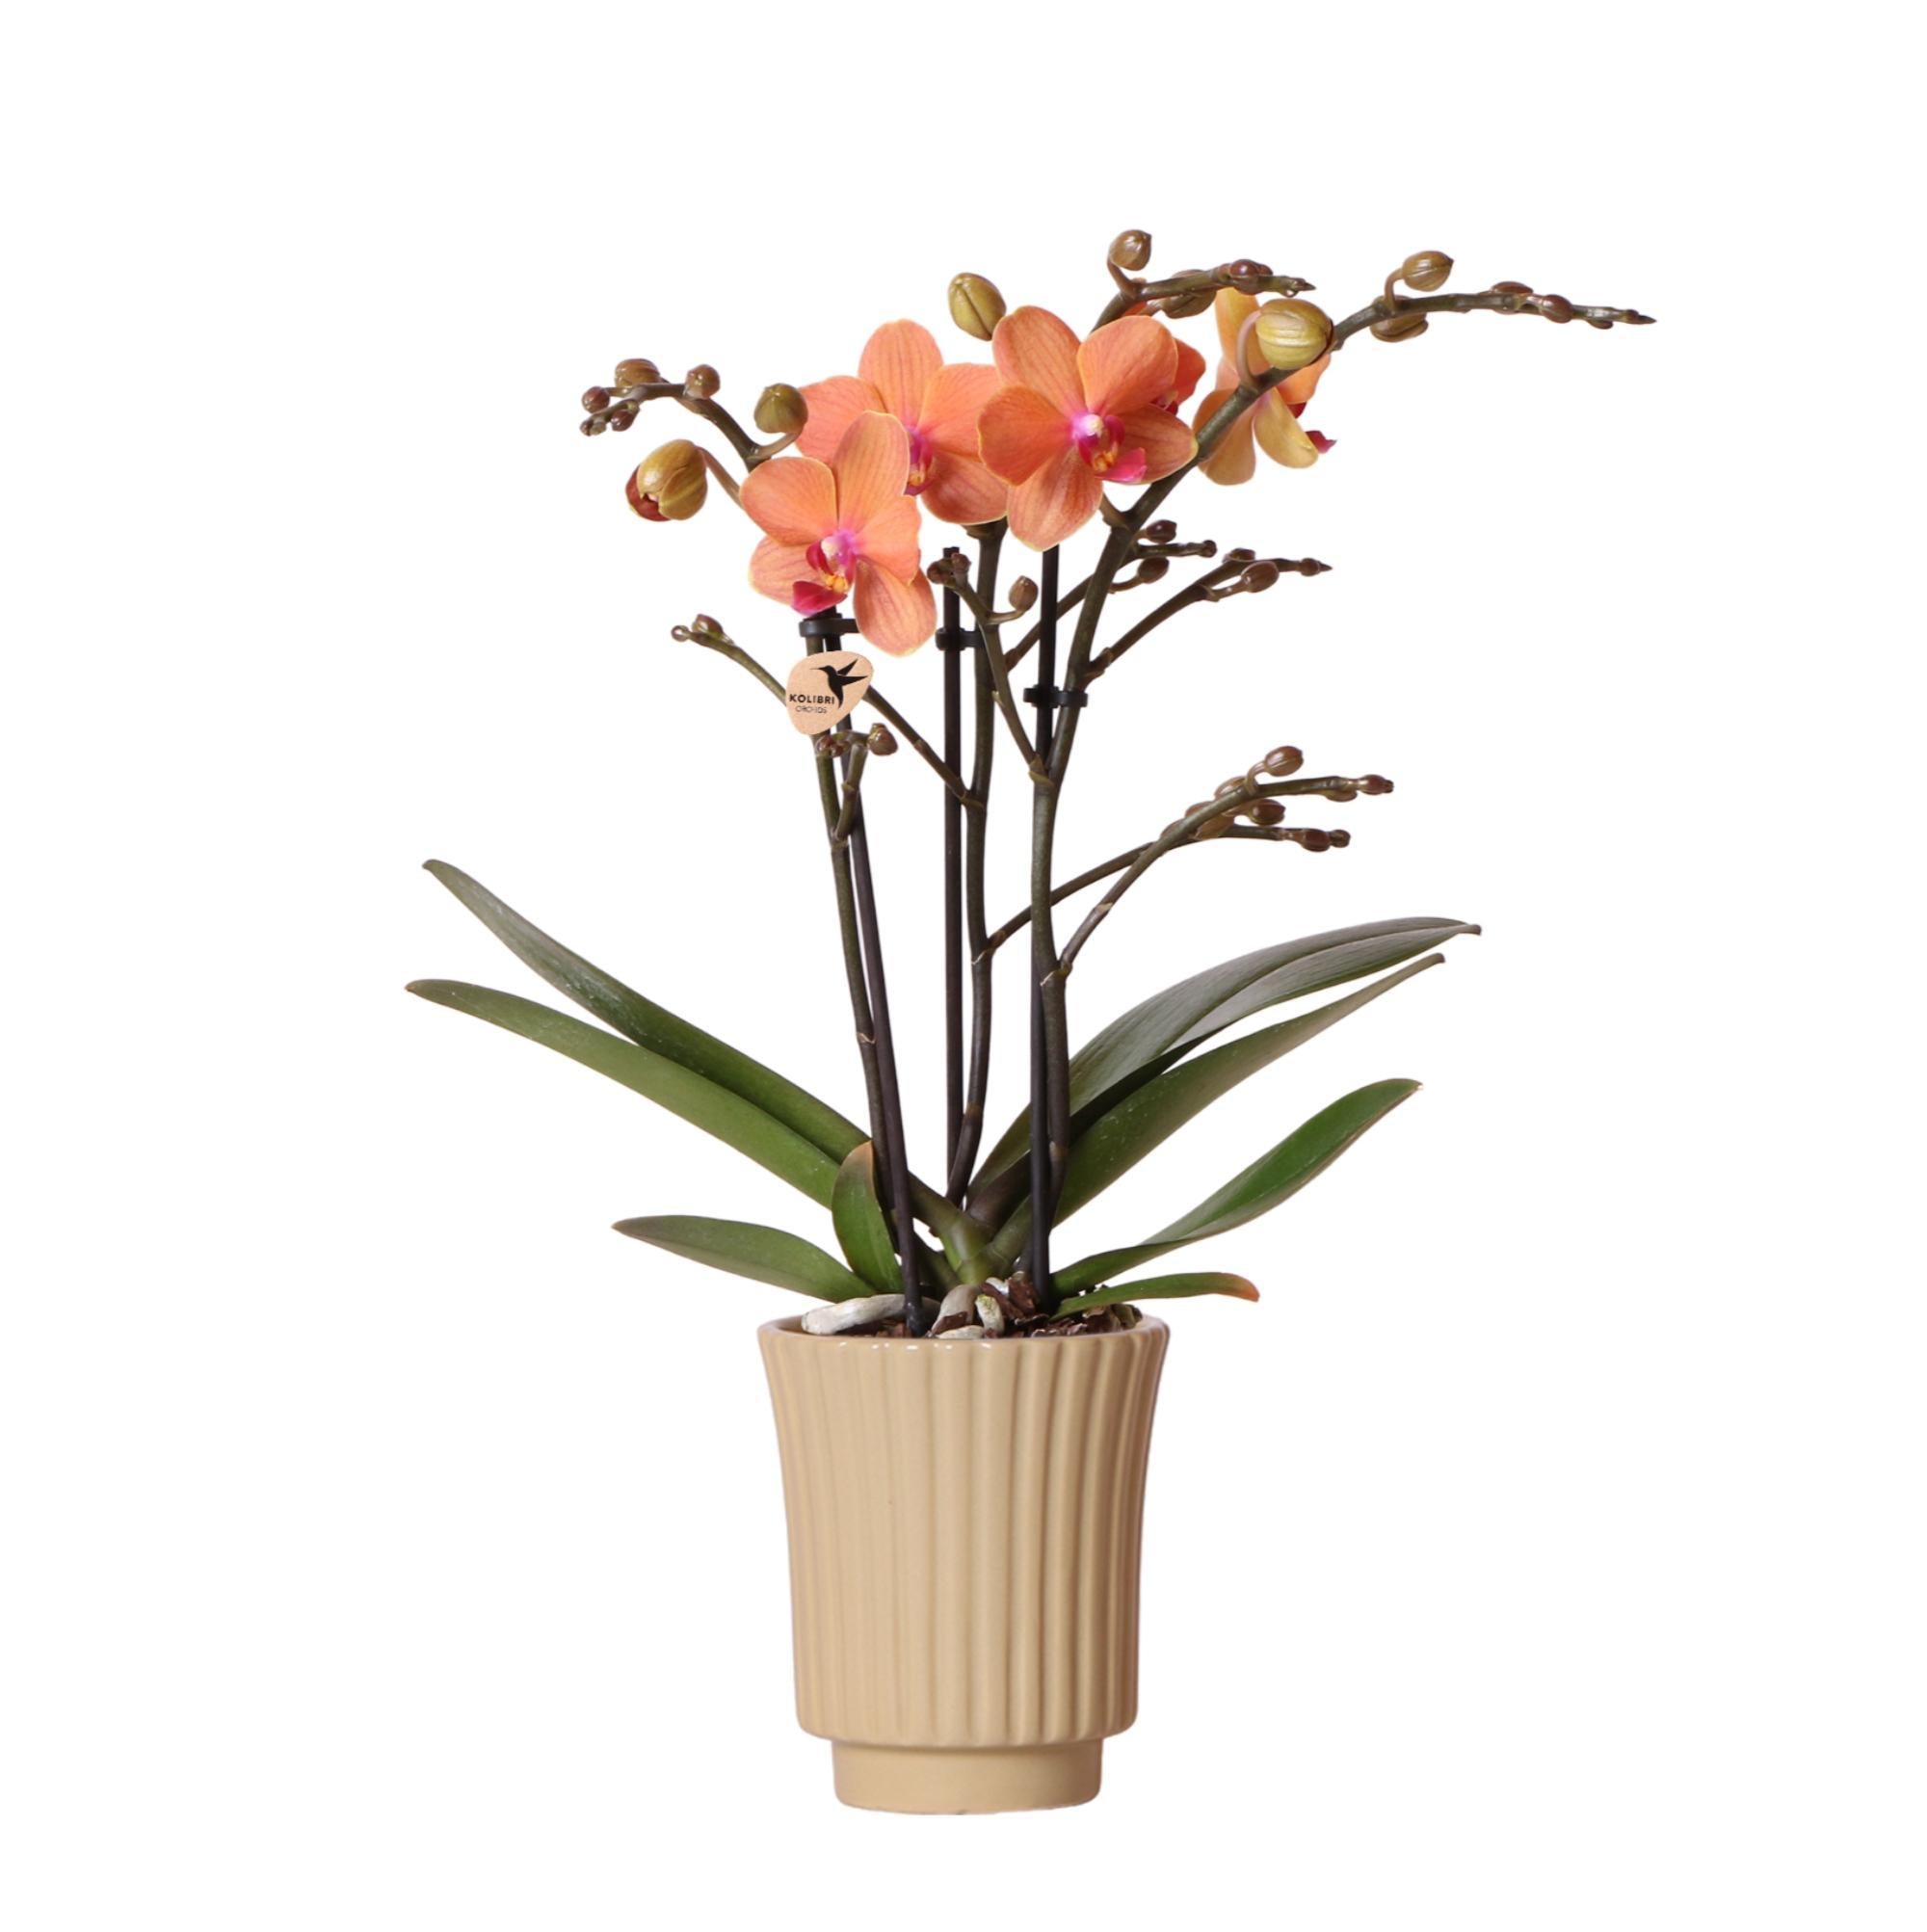 Plante d'intérieur - orchidée orange et son cache-pot kaki - plante d'intérieur fleurie 35cm